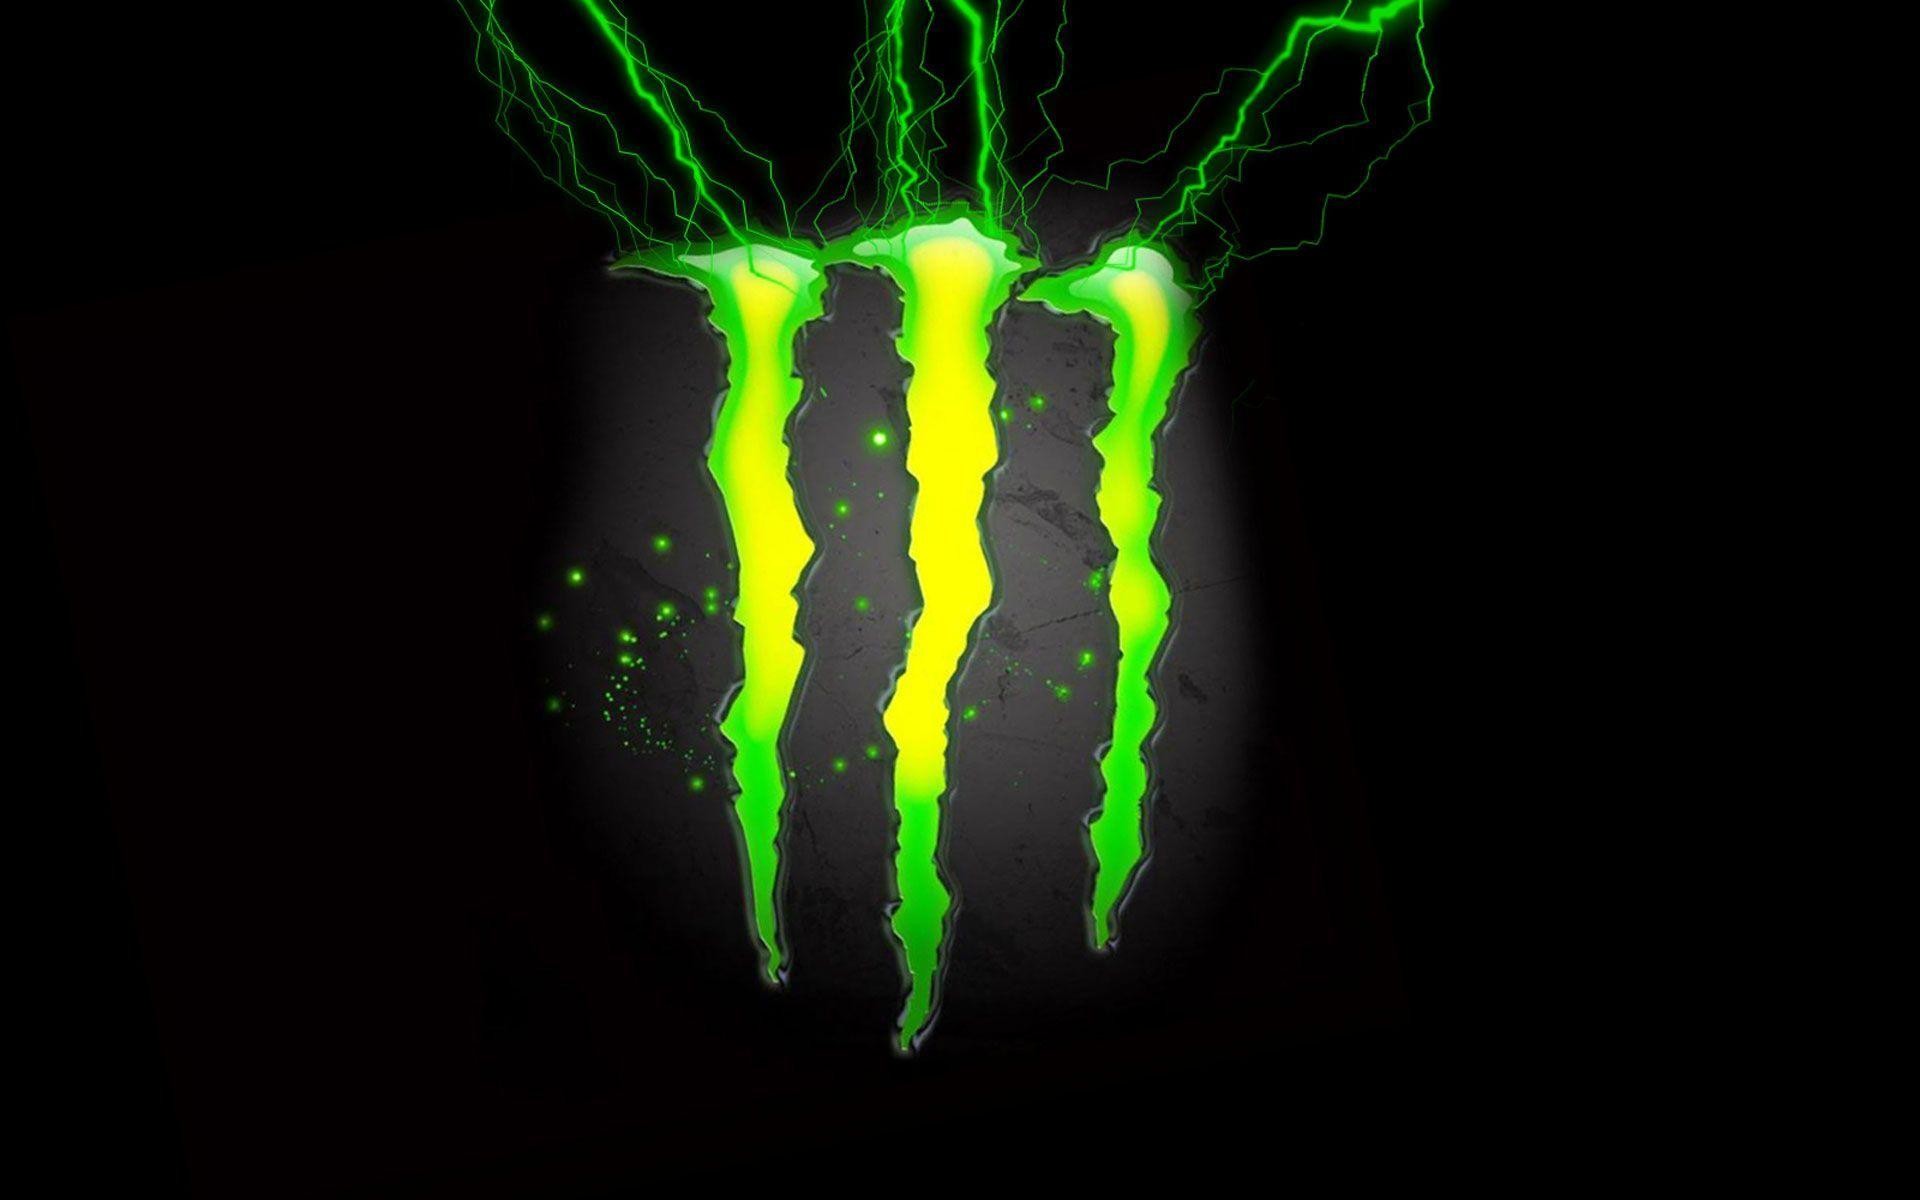 Monster Energy Desktop Wallpaper (70+ images)